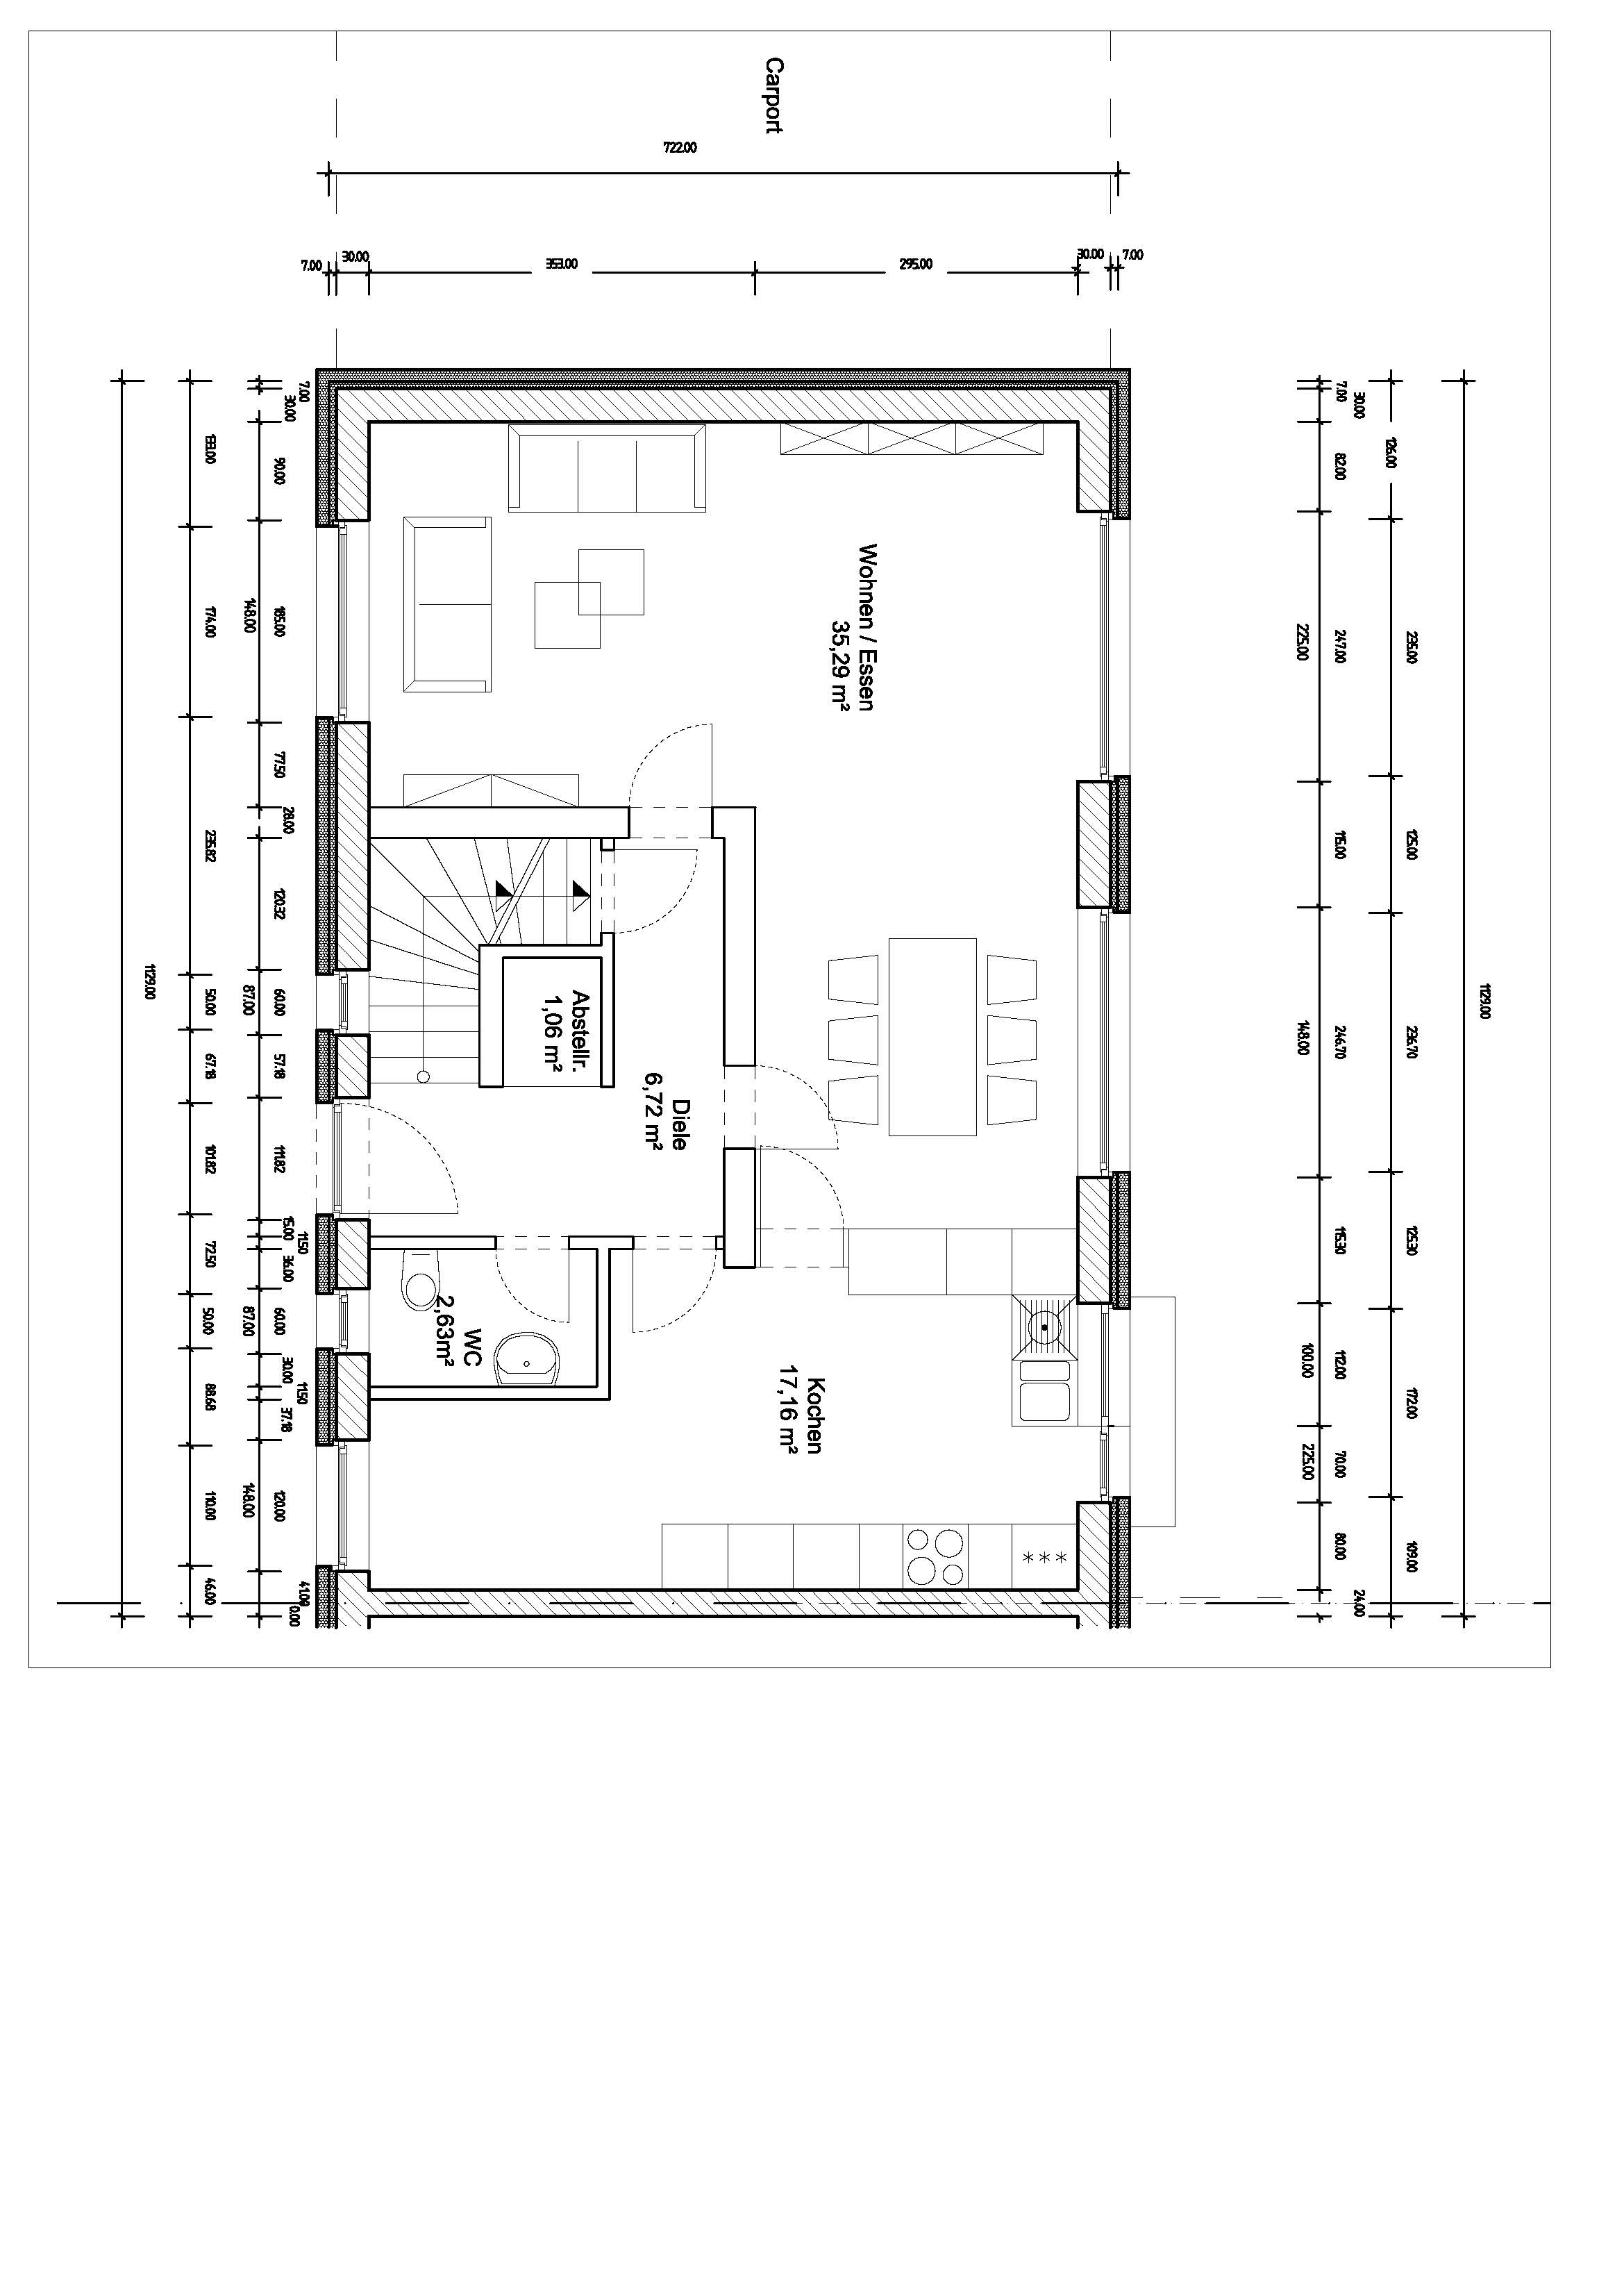 bestandshaus-planung-eingangsbereich-298570-3.jpg